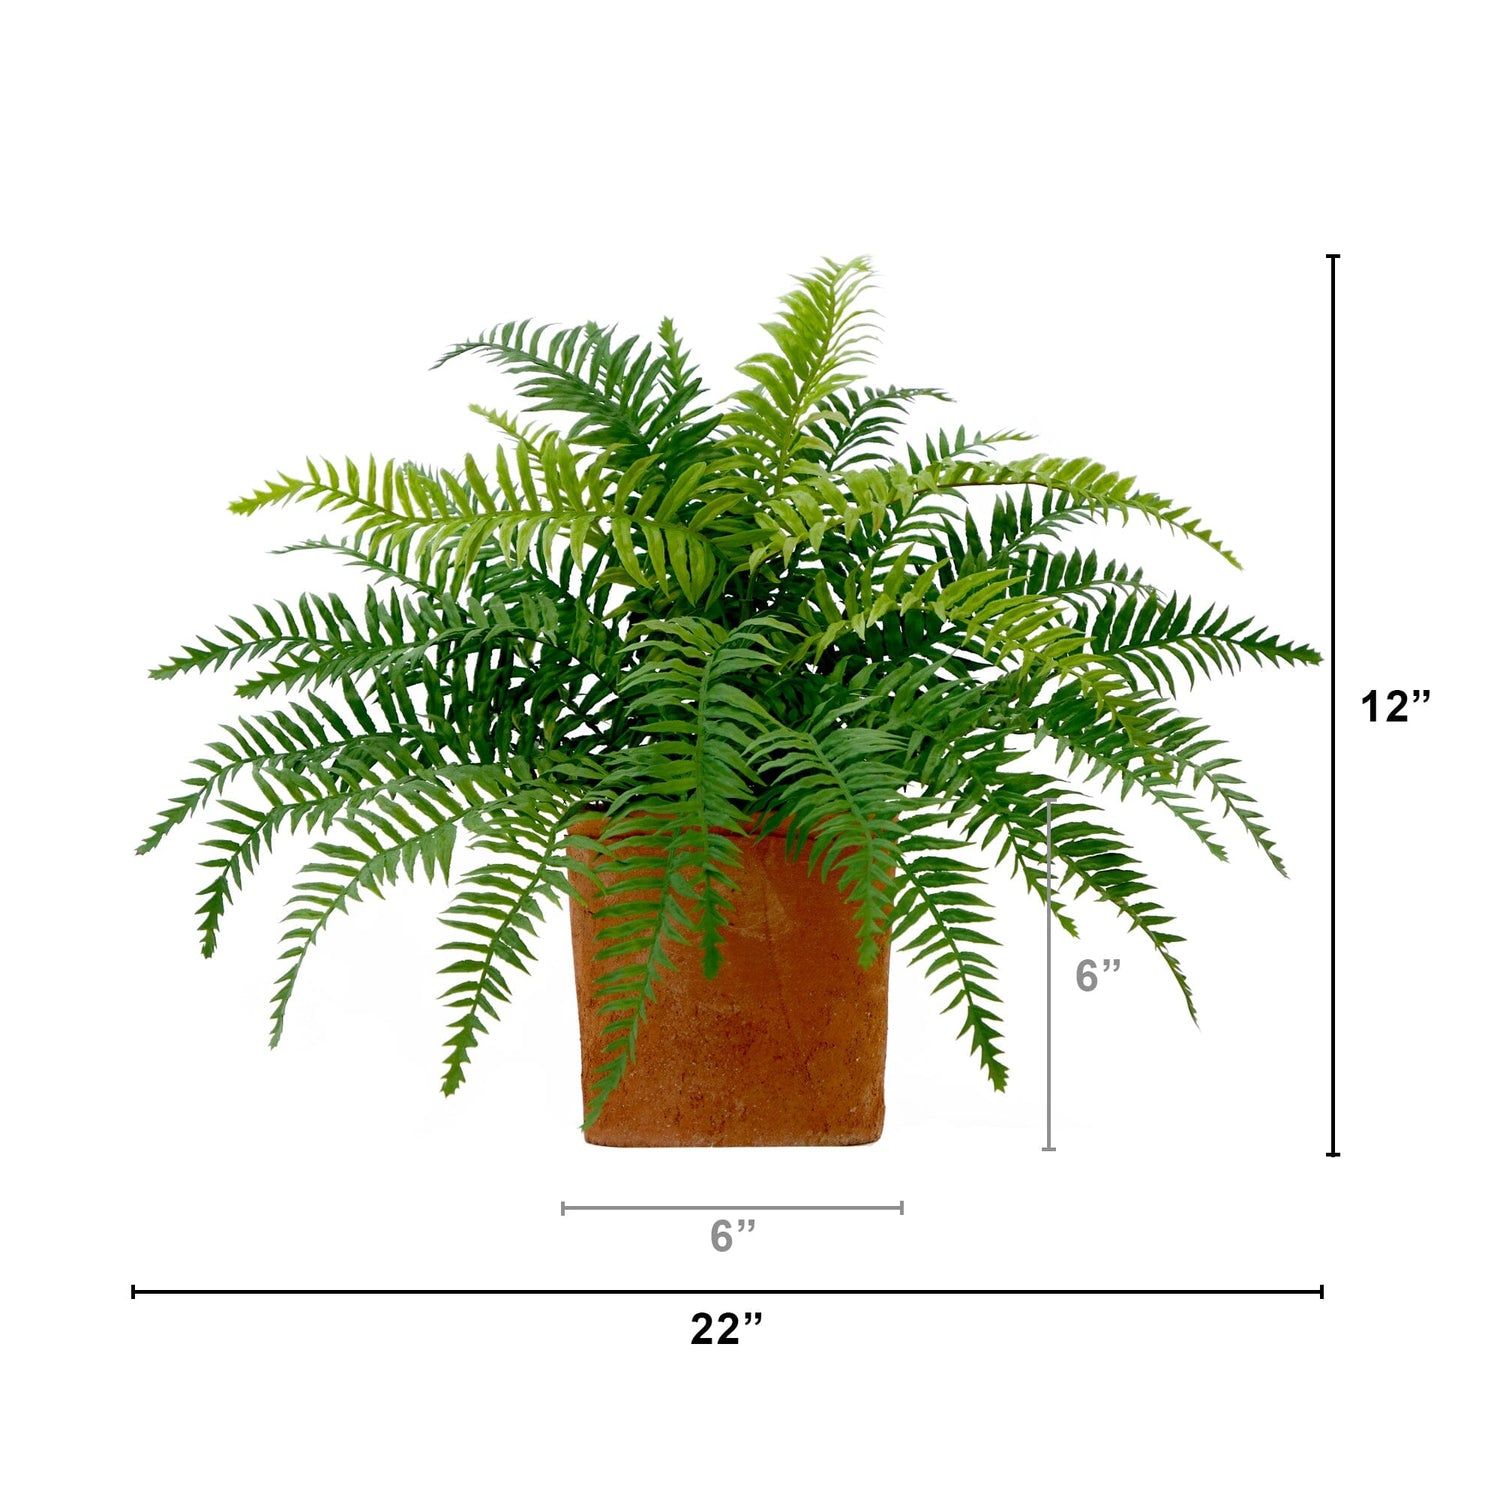 22” Artificial Fern Plant in Decorative Planter